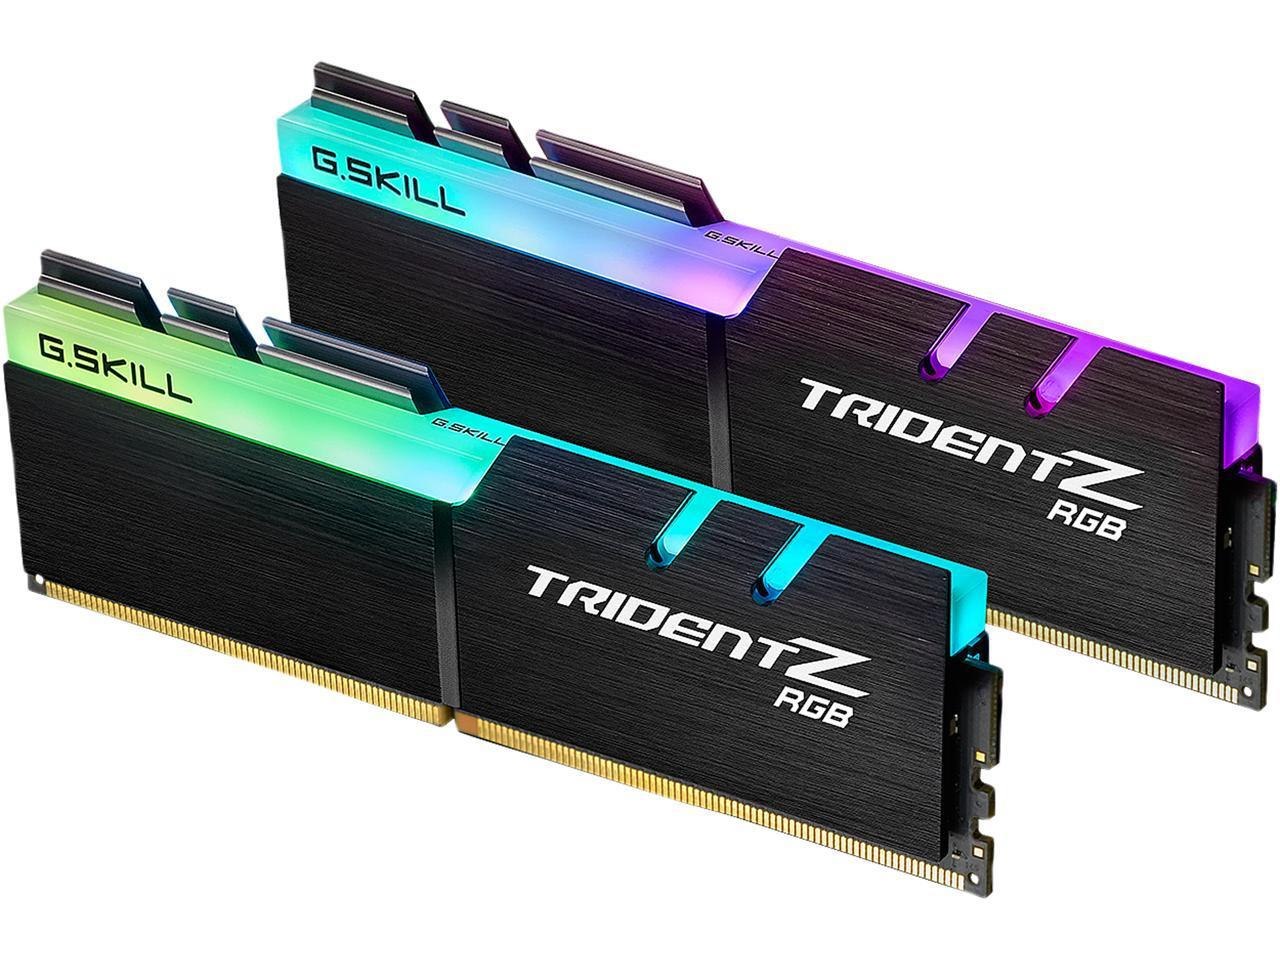 G.Skill TridentZ RGB Series 64GB (2 X 32GB) 288-Pin PC Ram DDR4 2666 (PC4 21300) Desktop Memory Model F4-2666C18D-64GTZR